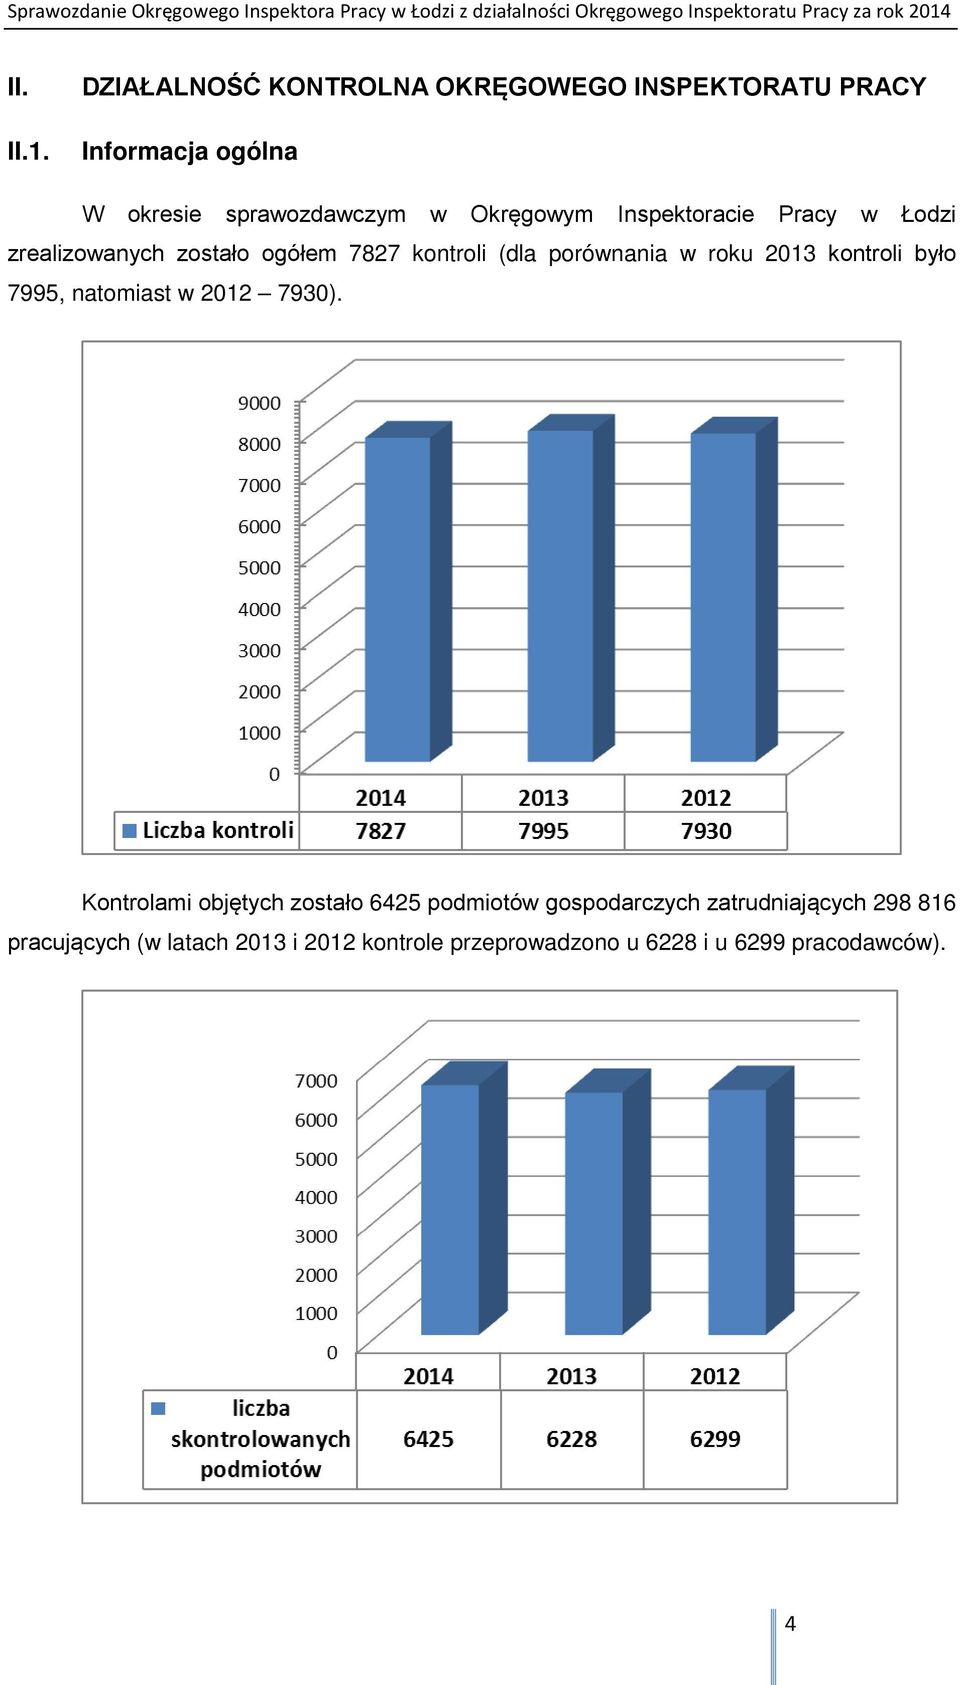 Inspektoracie Pracy w Łodzi zrealizowanych zostało ogółem 7827 kontroli (dla porównania w roku 2013